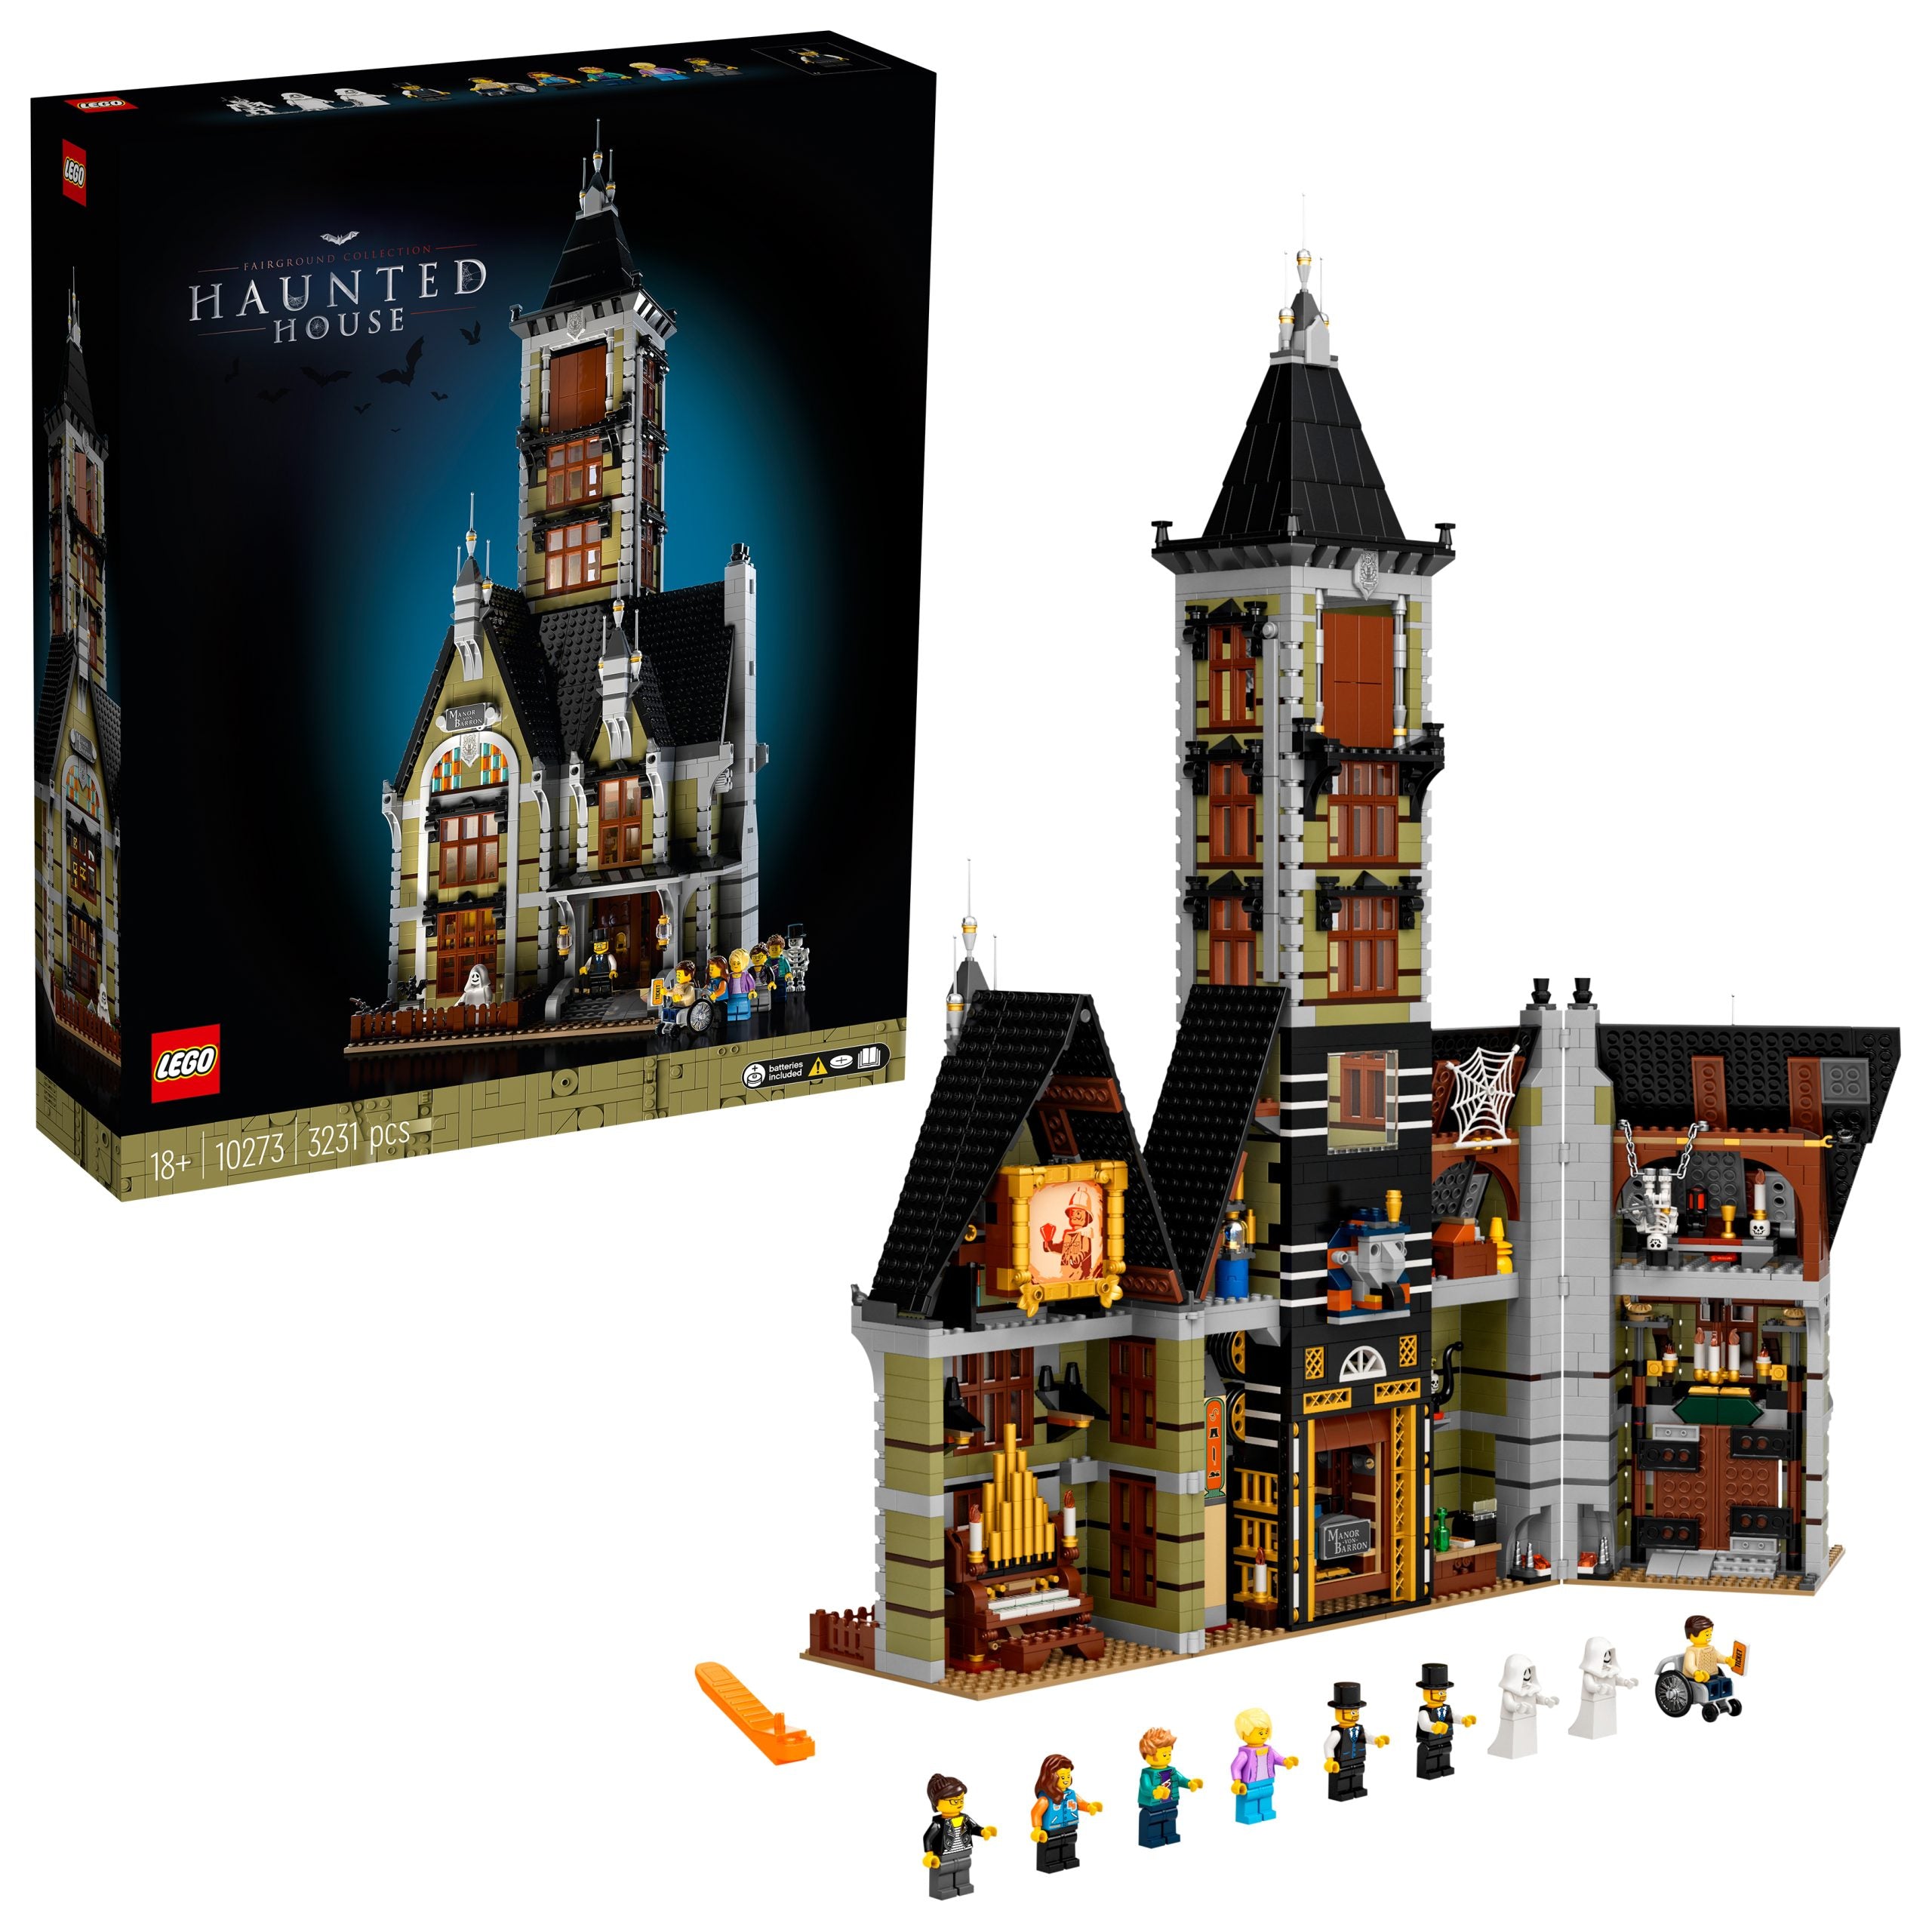 10273 - LEGO - Creator Expert - La casa stregata